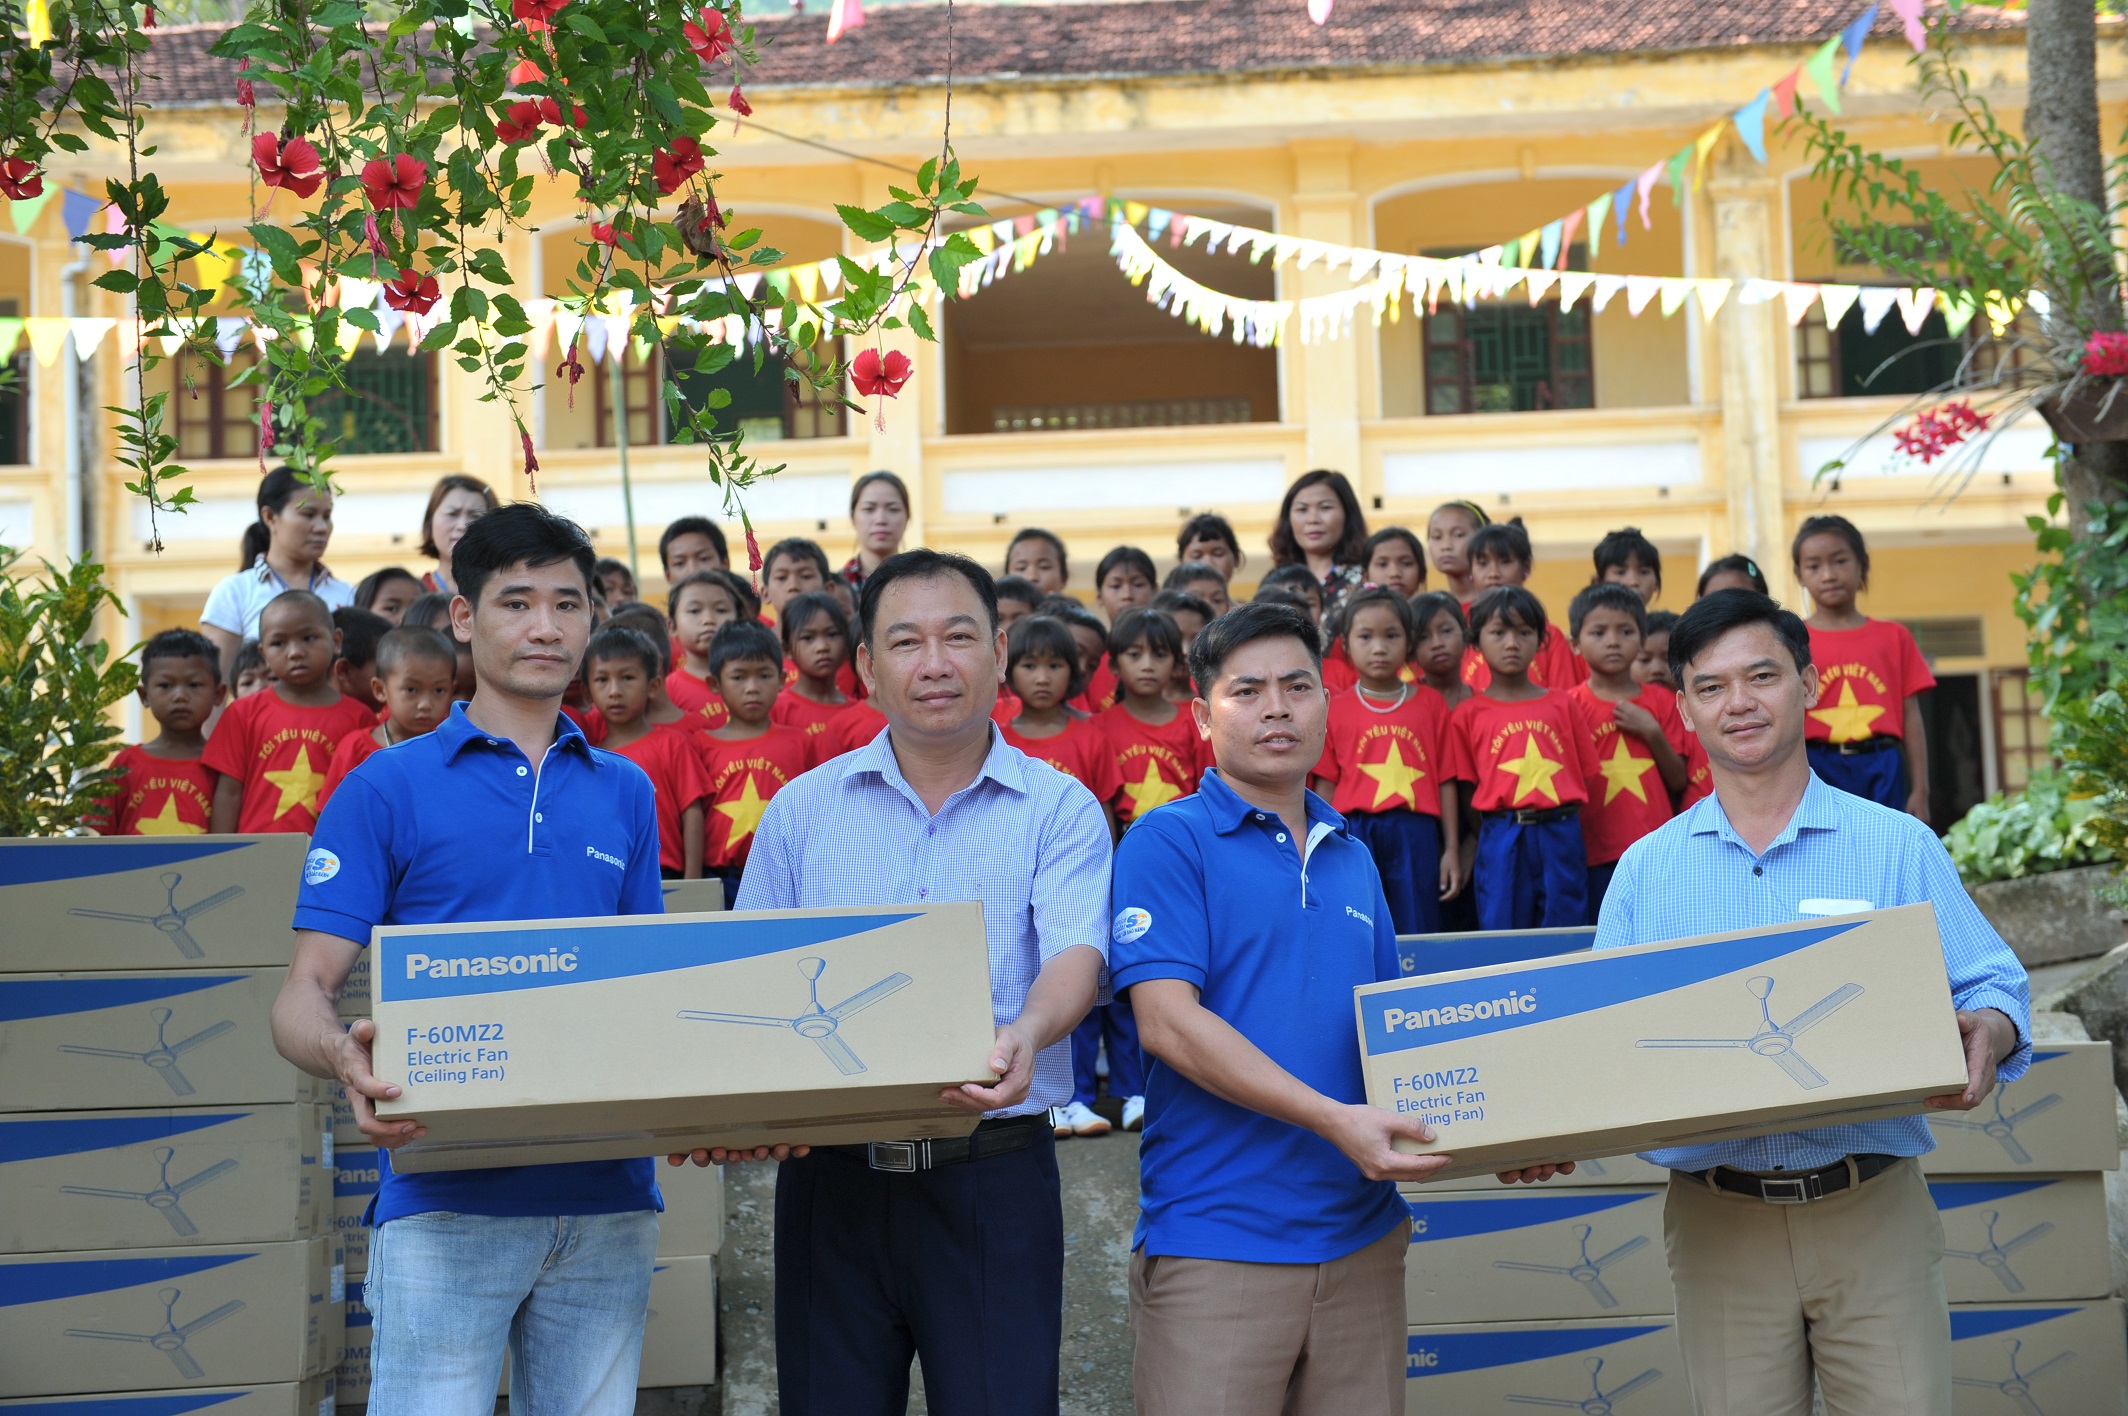 30 chiếc quạt trần được Panasonic trao tặng cho thầy cô, các em nhỏ tại trường TH Mường Típ 2, Nghệ An và Trung tâm bảo trợ trẻ em mồ côi và tàn tật Tam Kỳ, tỉnh Quảng Nam